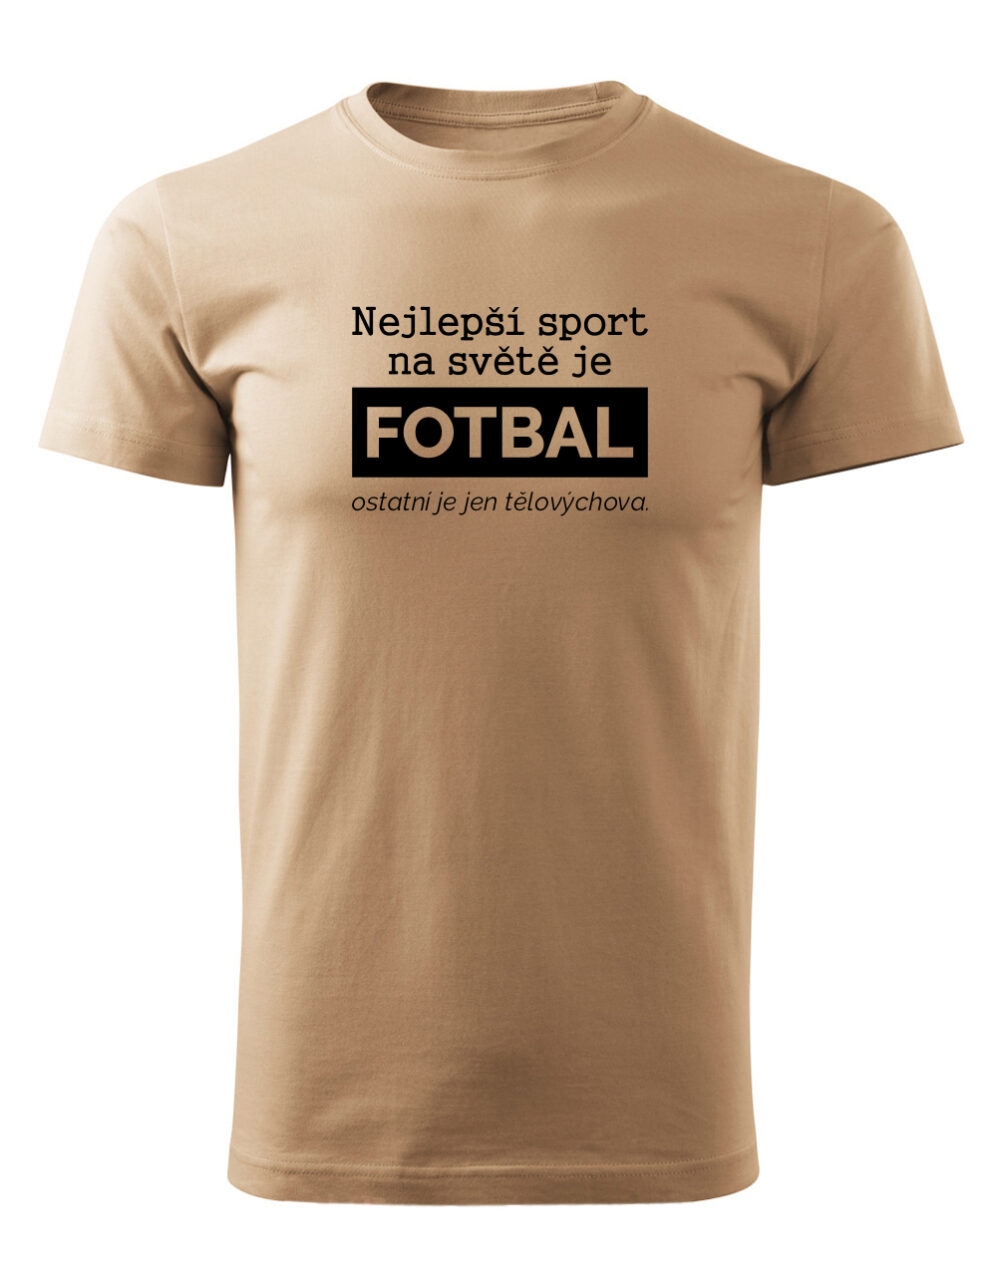 Pánské tričko s potiskem Nejlepší sport je fotbal písková